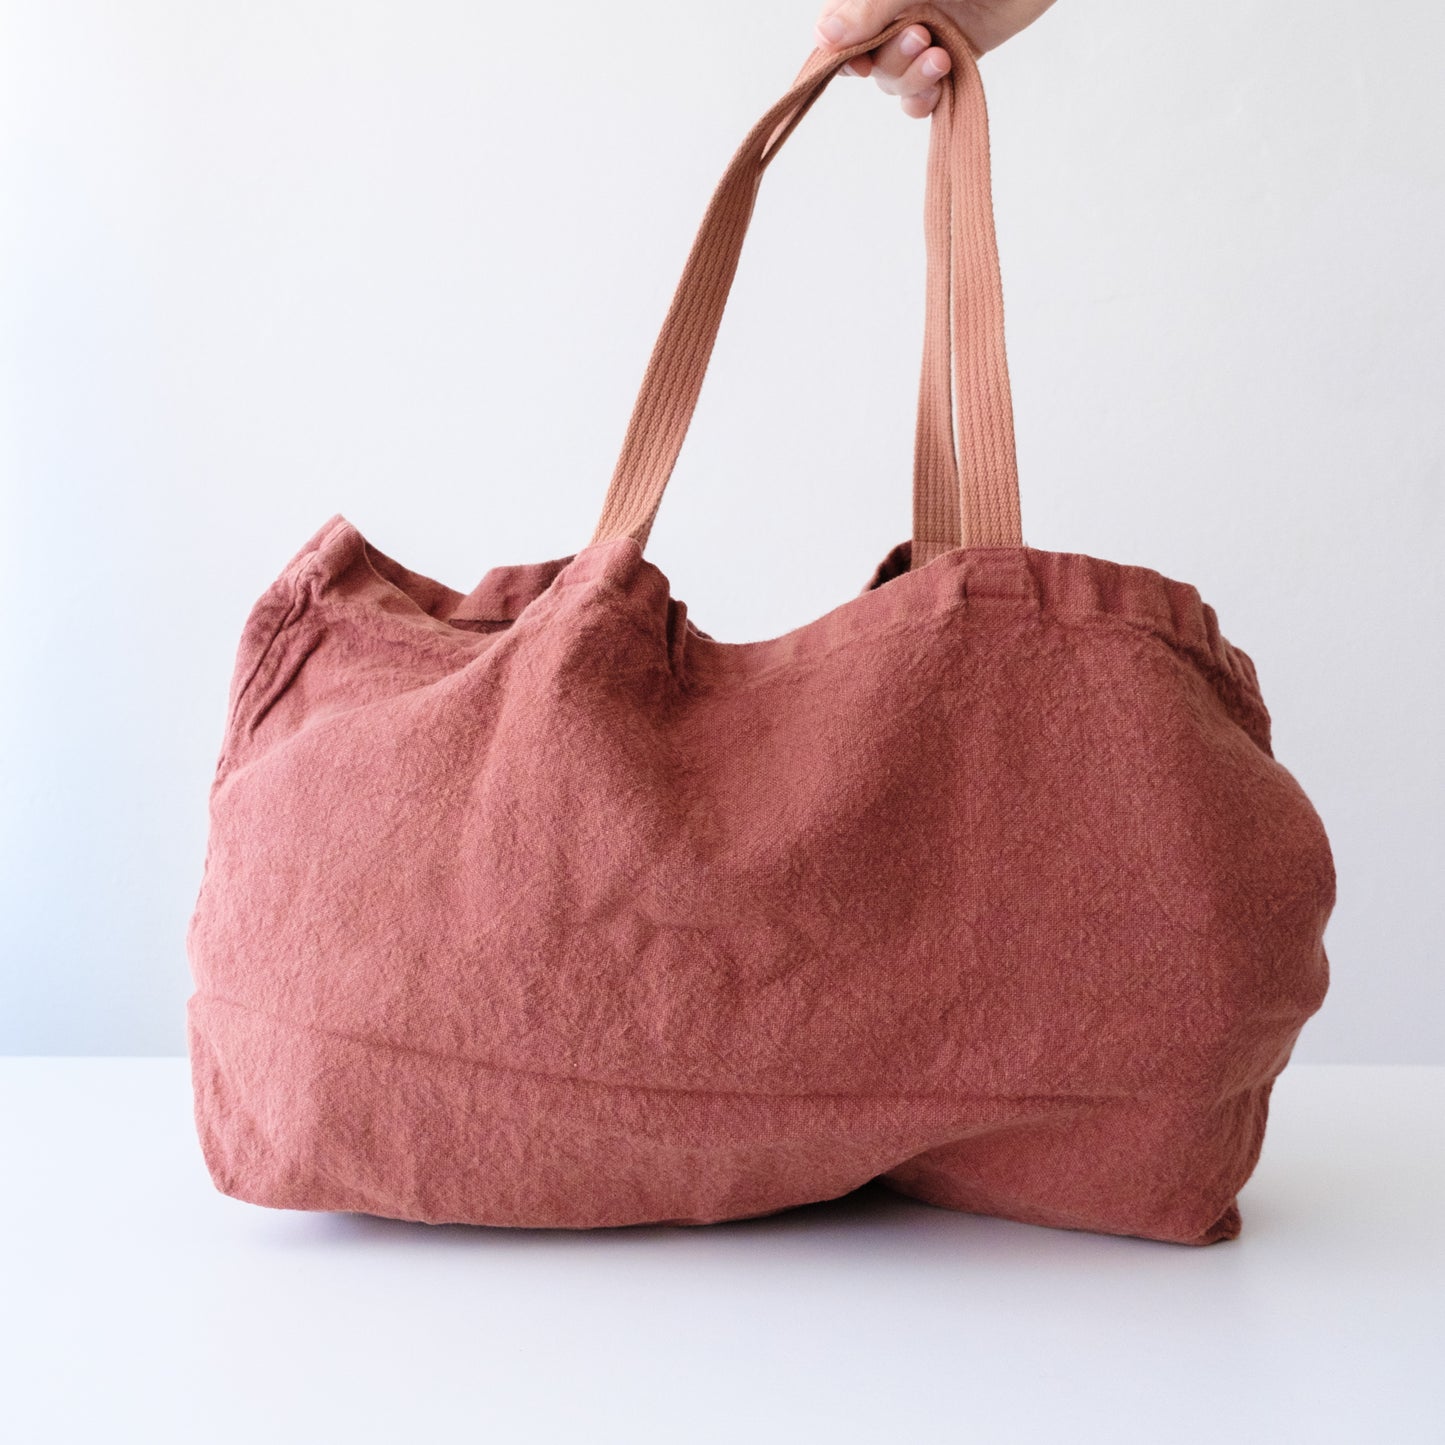 Linen Bag - Brick